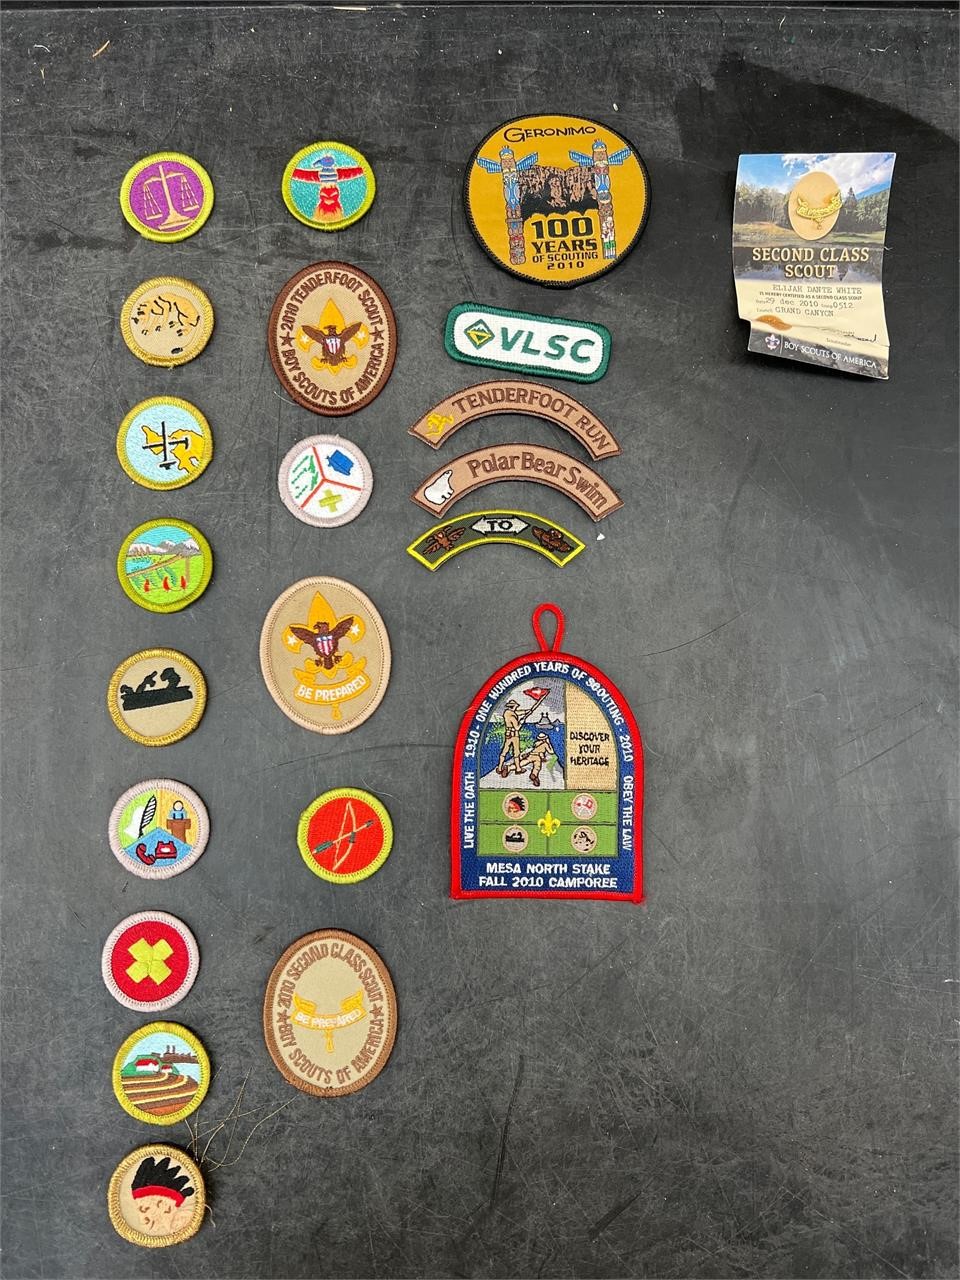 Boy Scout Badges